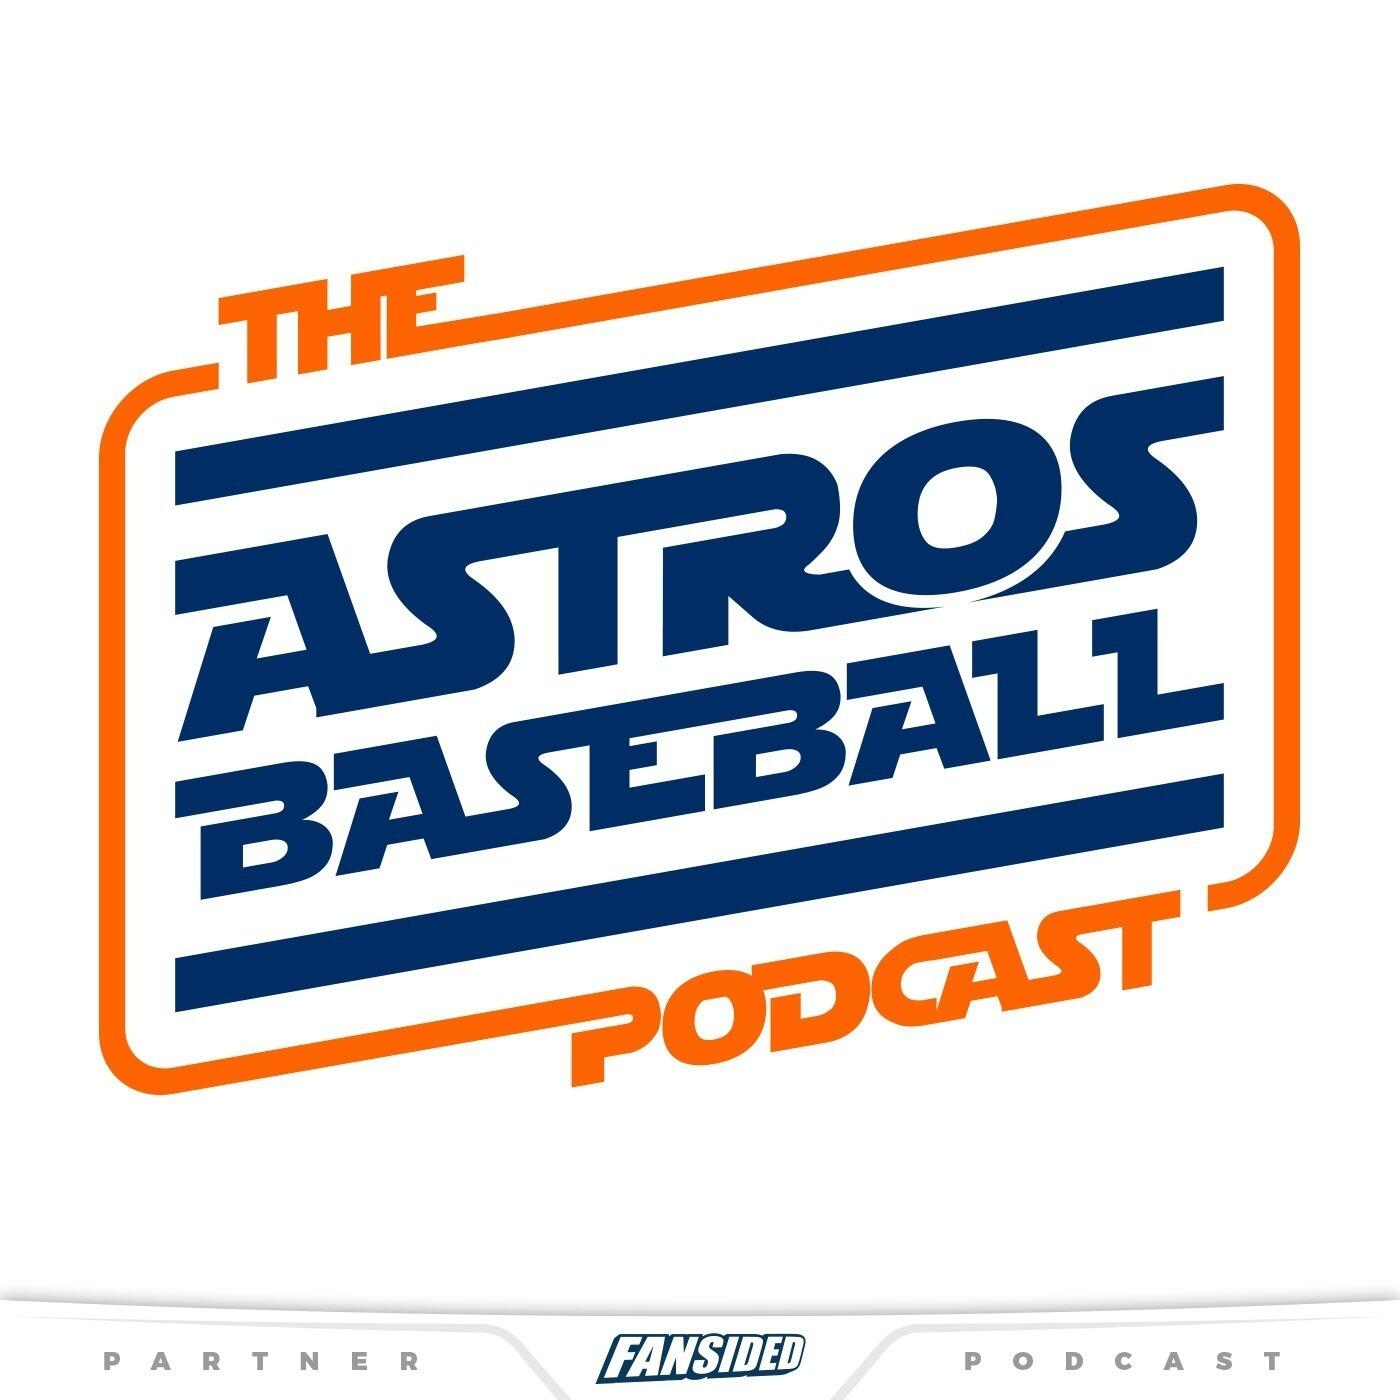 Astros Baseball iHeart